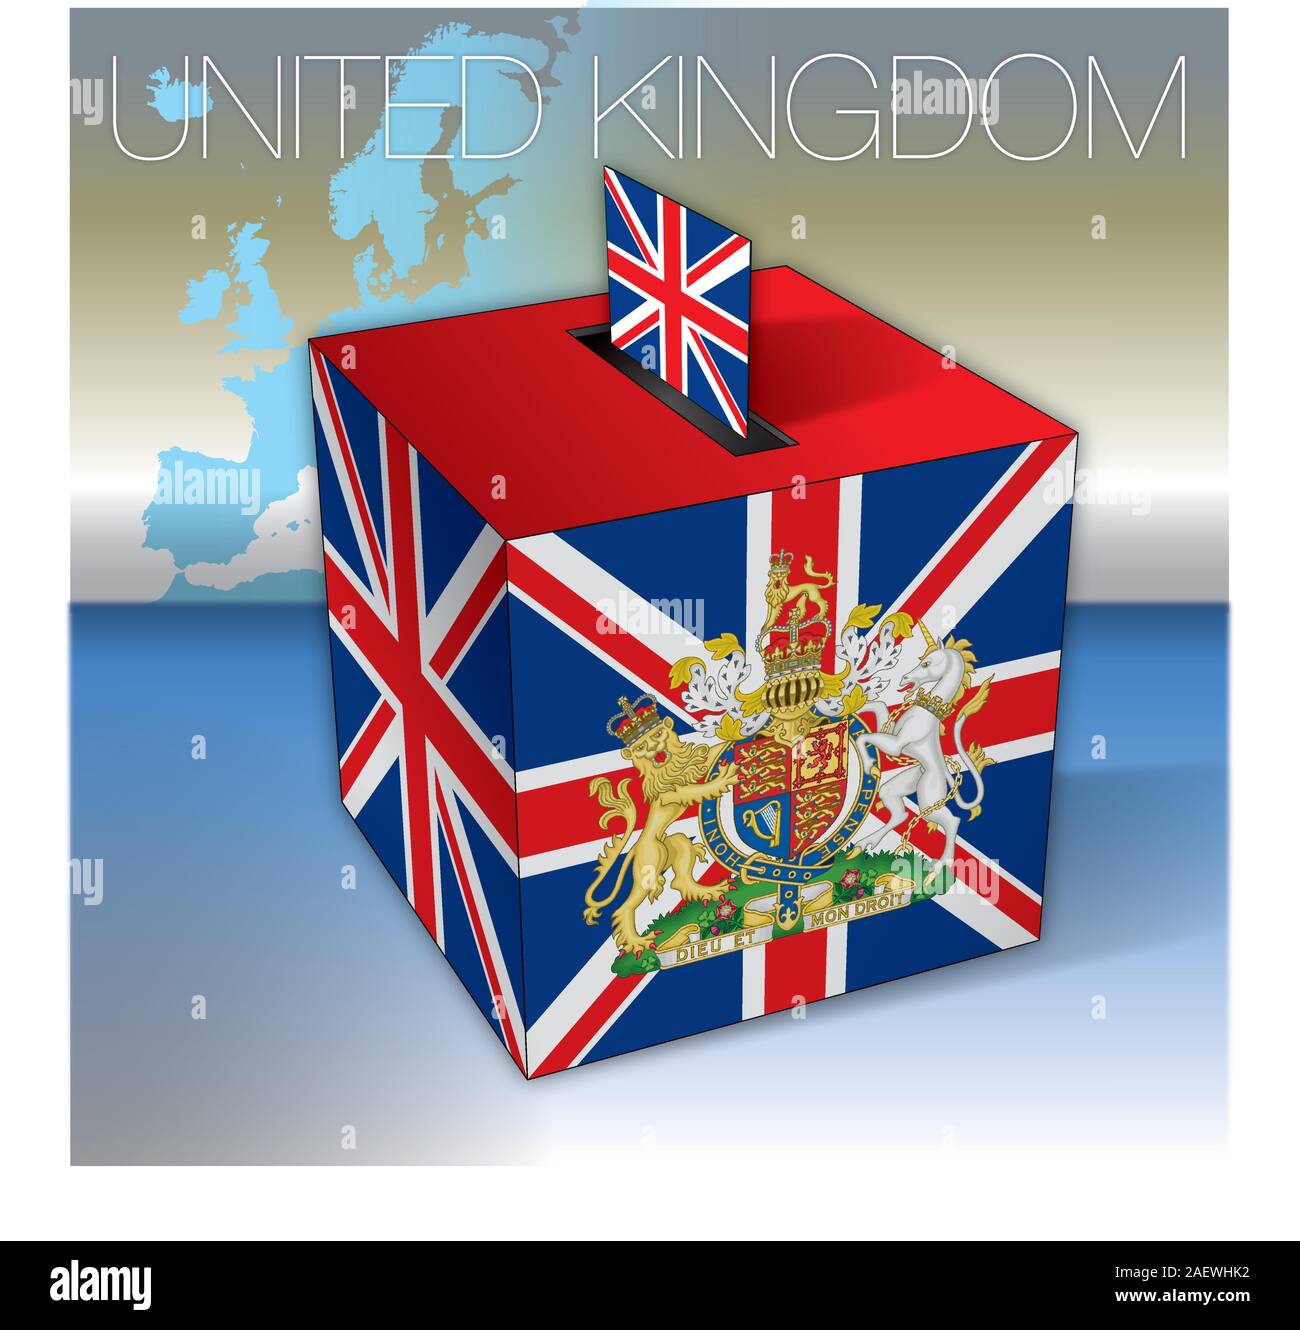 Regno Unito elezioni, urne con la bandiera del Regno Unito e simboli, illustrazione vettoriale Illustrazione Vettoriale